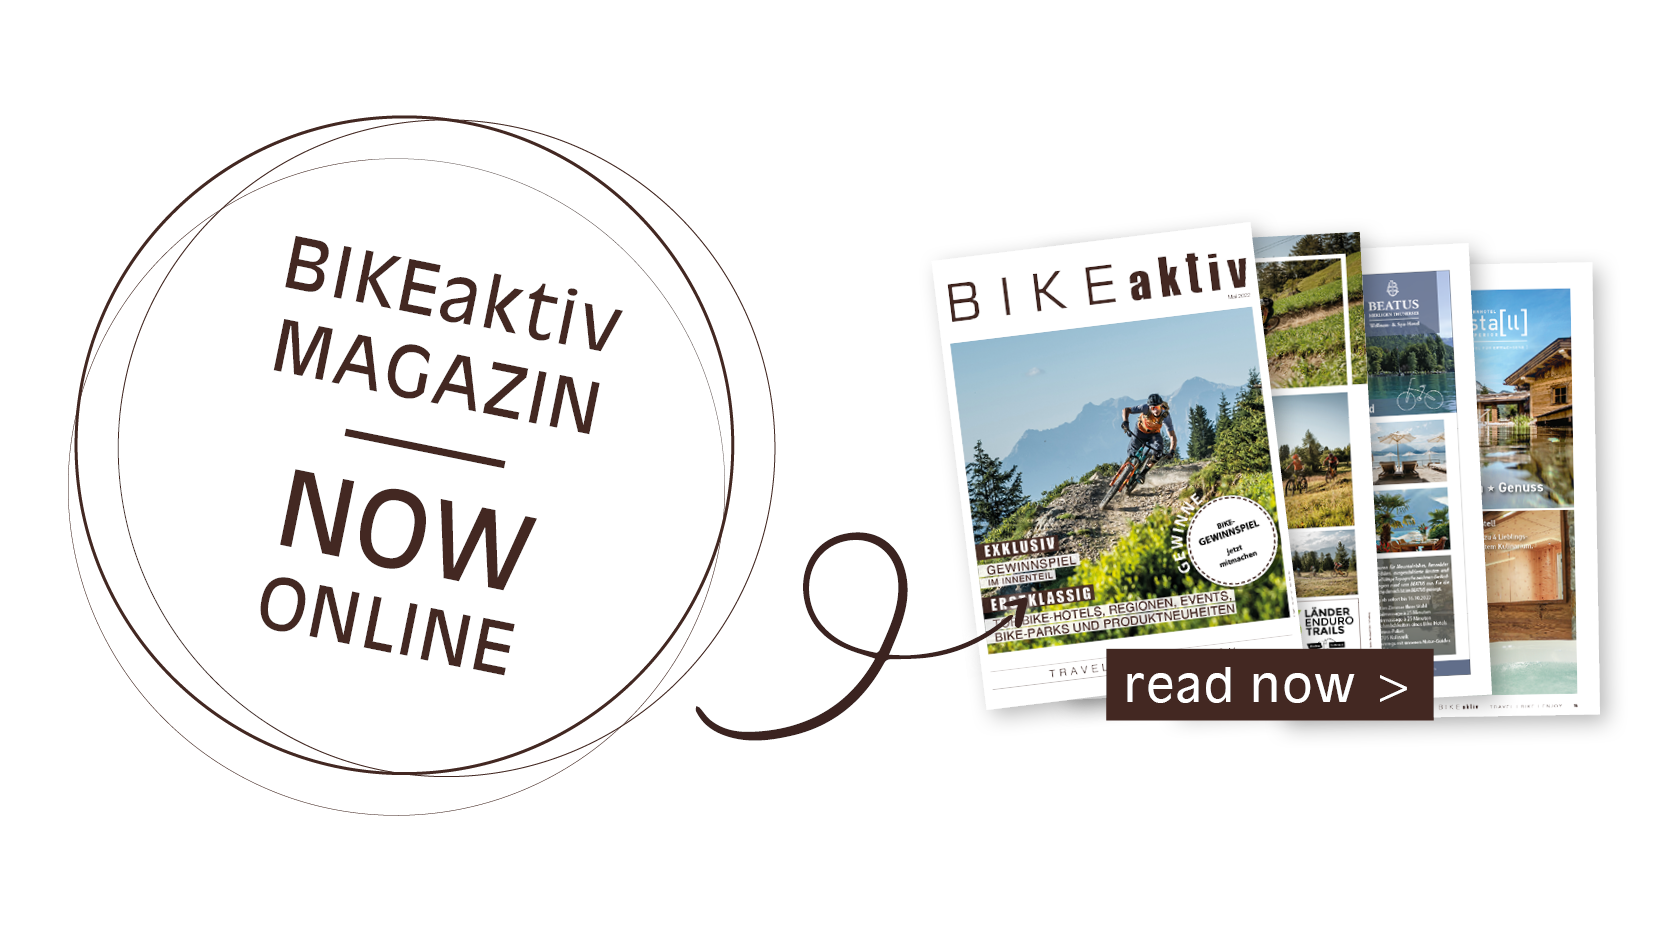 bikeaktiv-now-online-2022